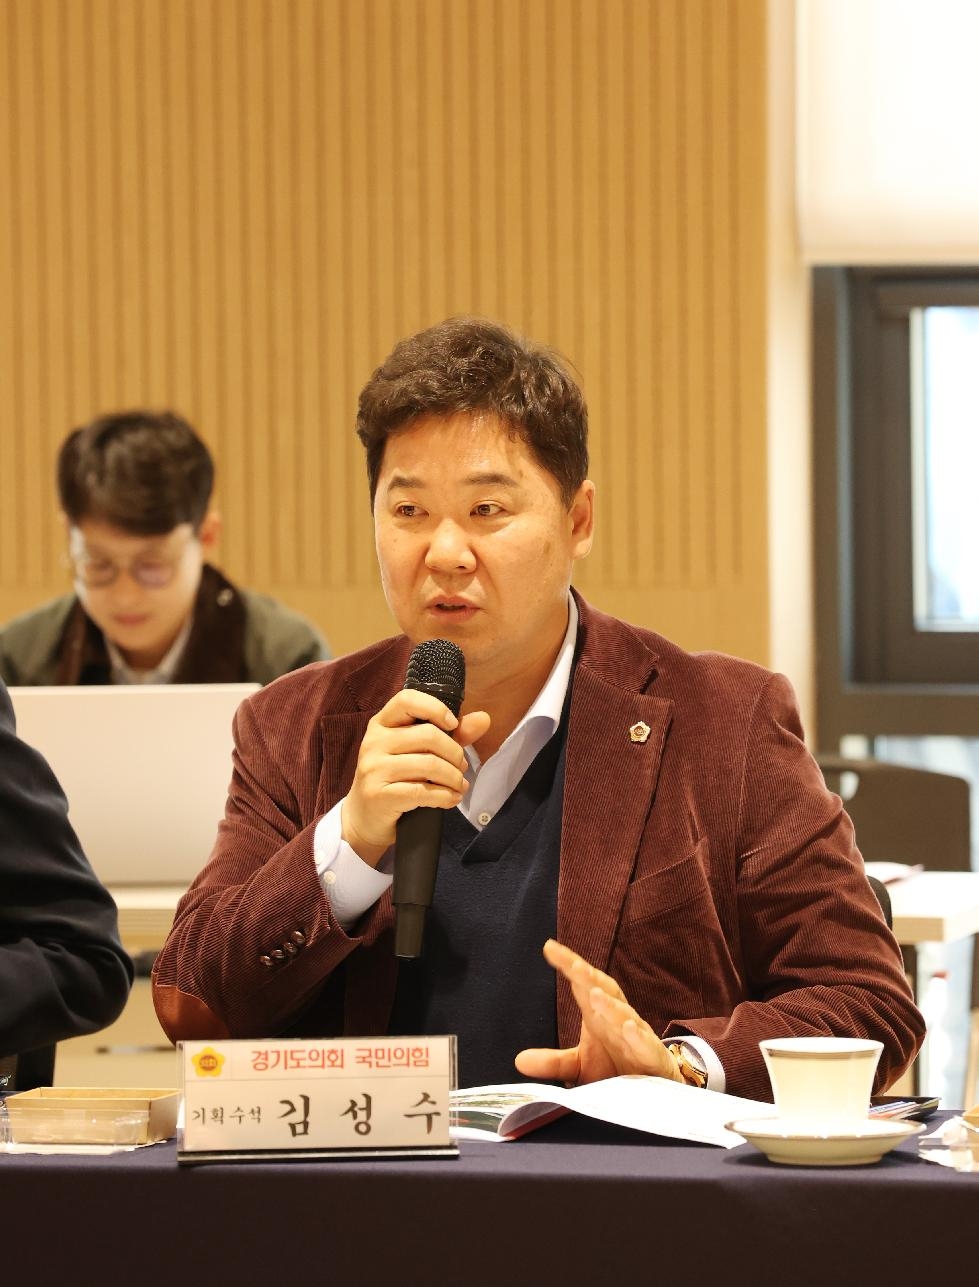 경기도의회 김성수 의원, 도내 교육지원청 중소기업 제품 구매실적 저조 문제 비판